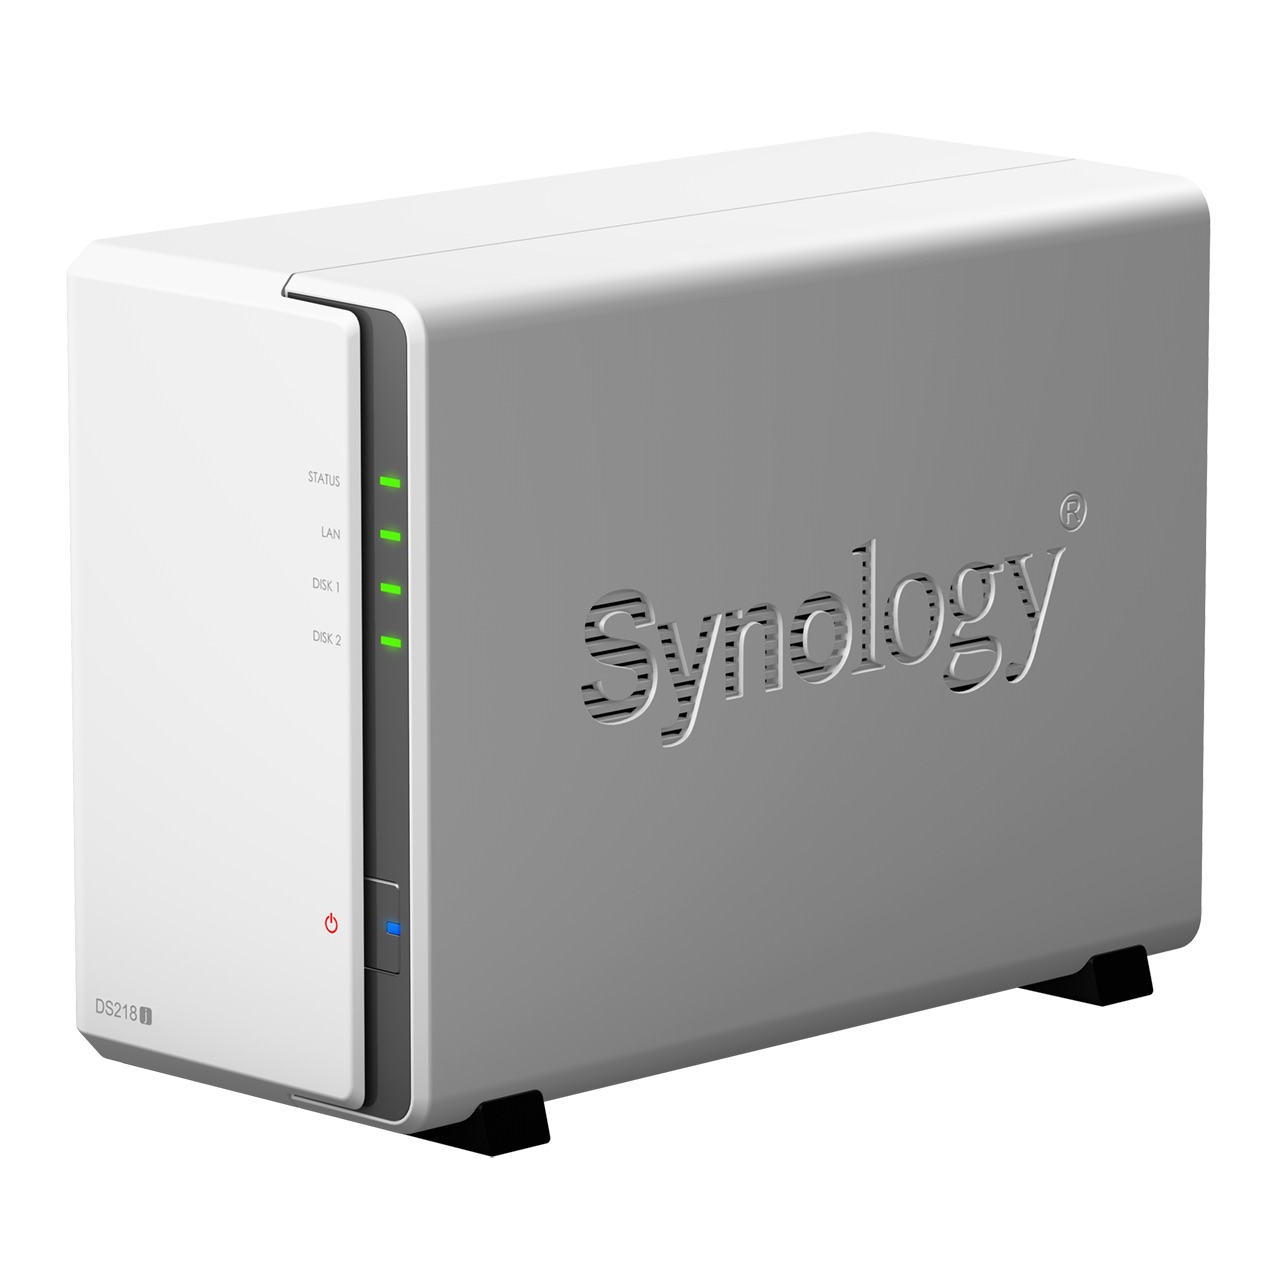 synology_ds218j_produkt5